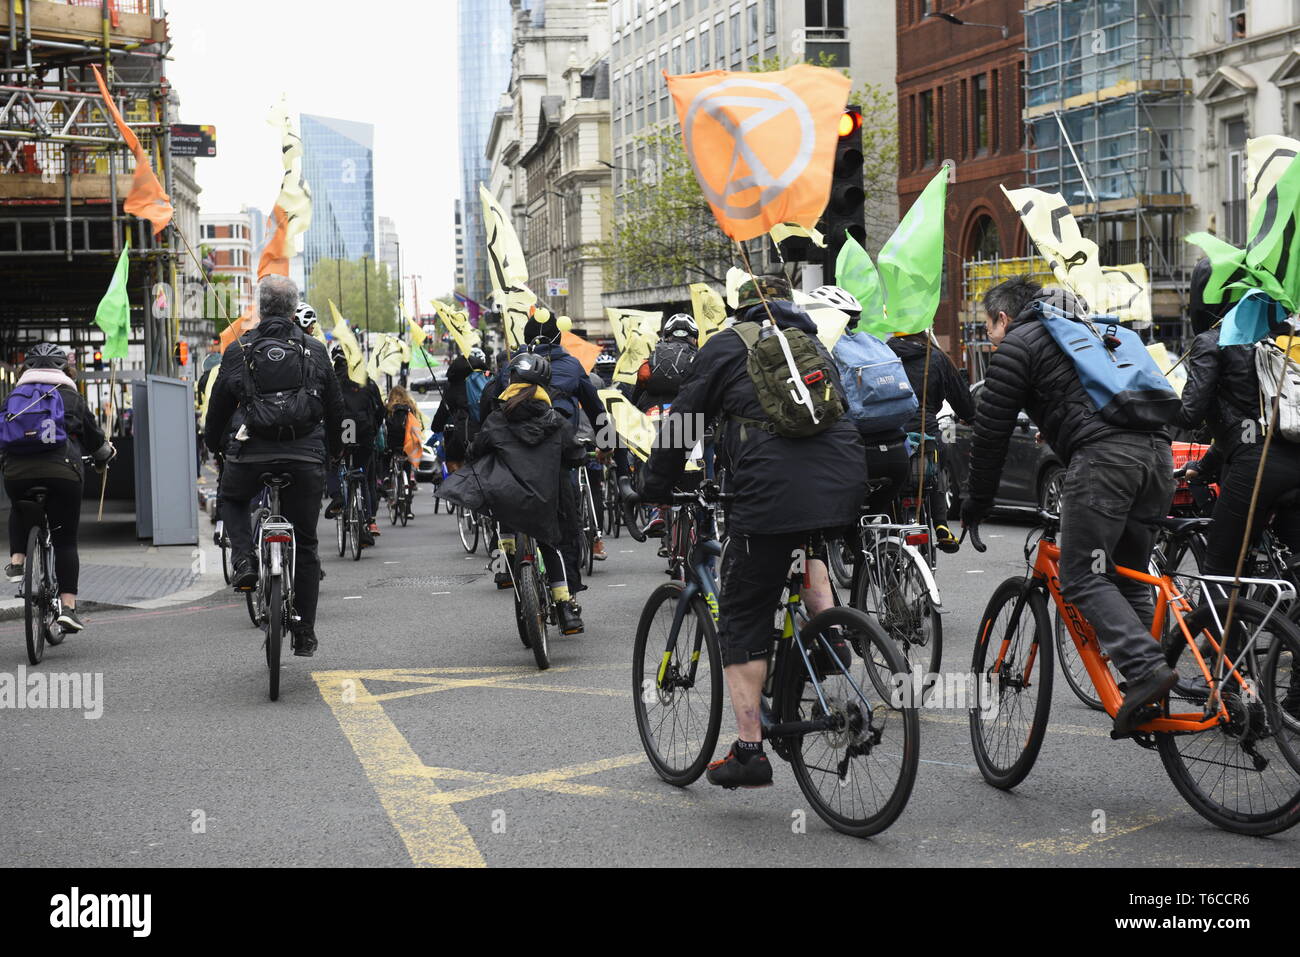 Rébellion Extinction 'Scyclistes' chaleureux centre de Londres pour protester contre la mort de l'Insecte - Extinction des manifestants ont organisé une rébellion "masse critique" de l'événement à vélo Banque D'Images